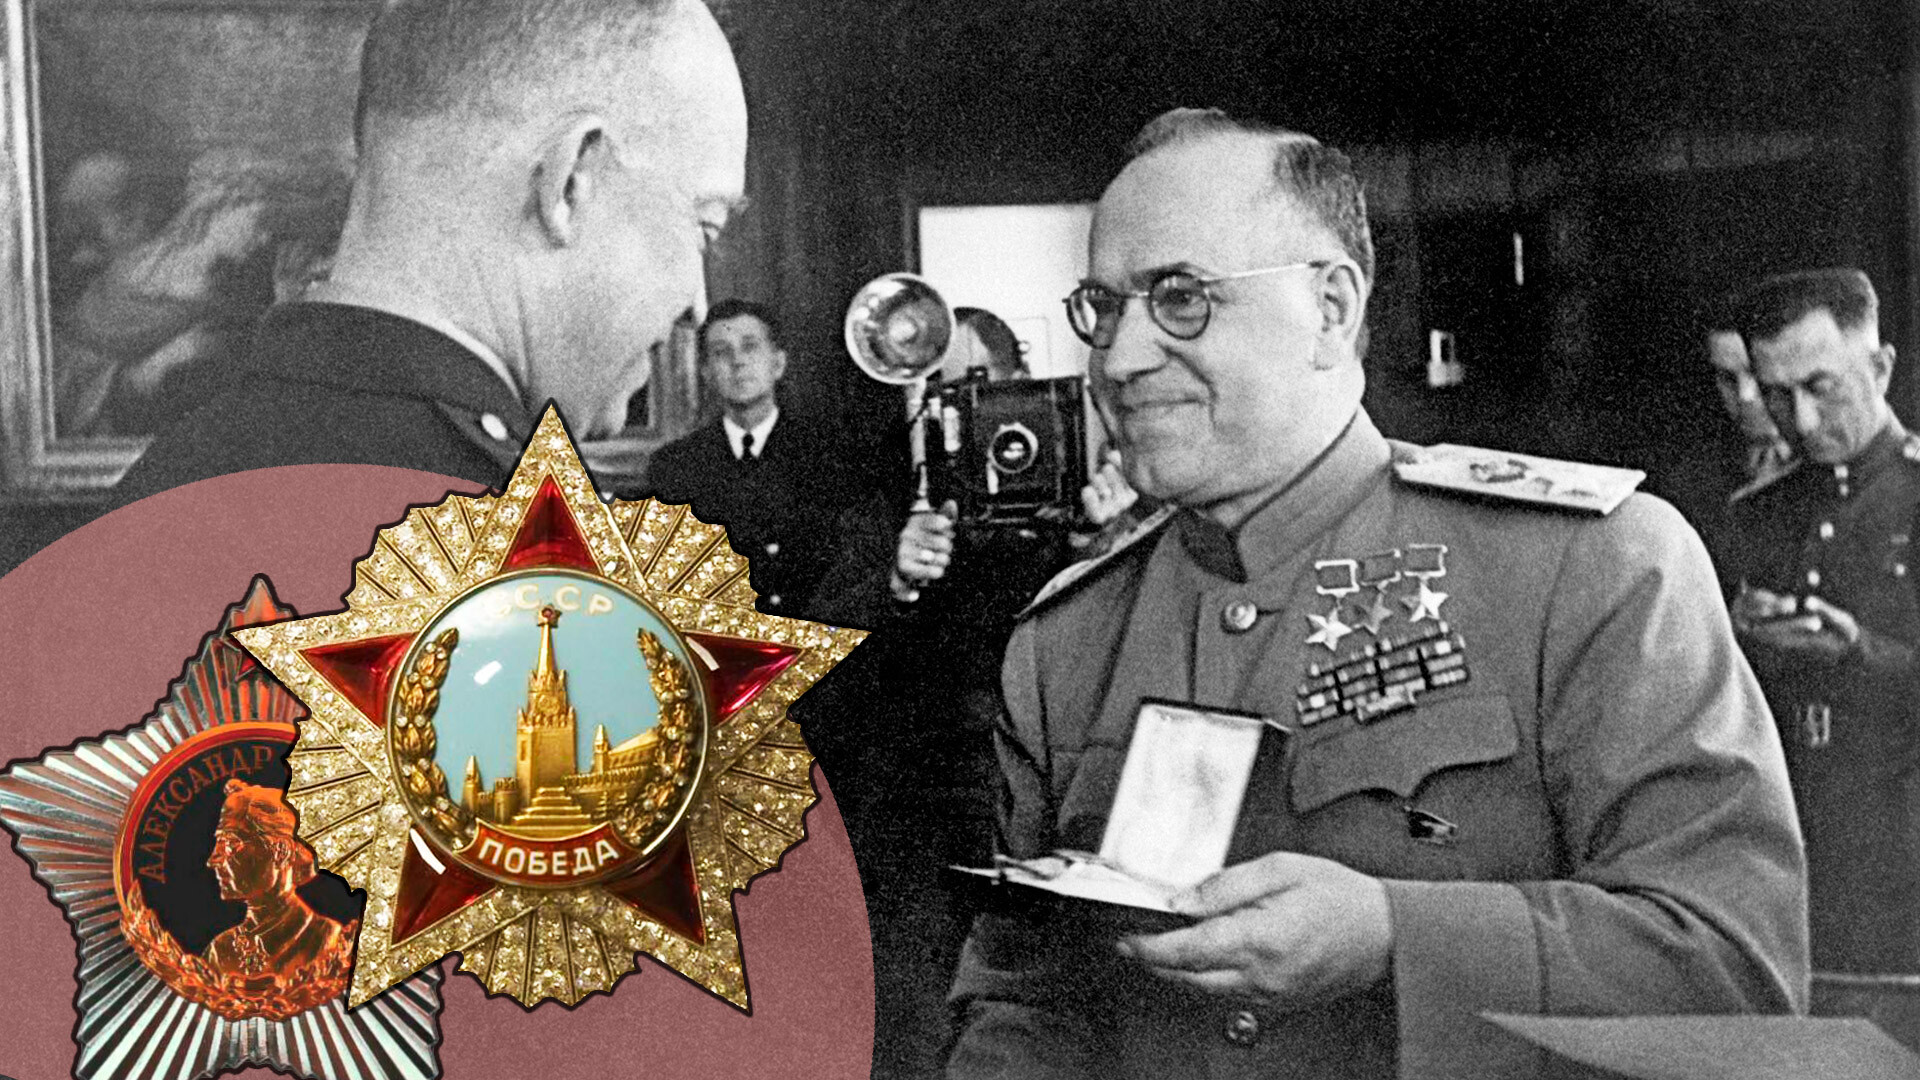 Maršal Sovjetske zveze Georgij Žukov izroča red zmage generalu ameriške vojske Dwightu Eisenhowerju, vrhovnemu poveljniku zavezniških ekspedicijskih sil v zahodni Evropi,  na ameriškem vojaškem poveljstvu v Frankfurtu na Majni v Nemčiji, junij 1945.